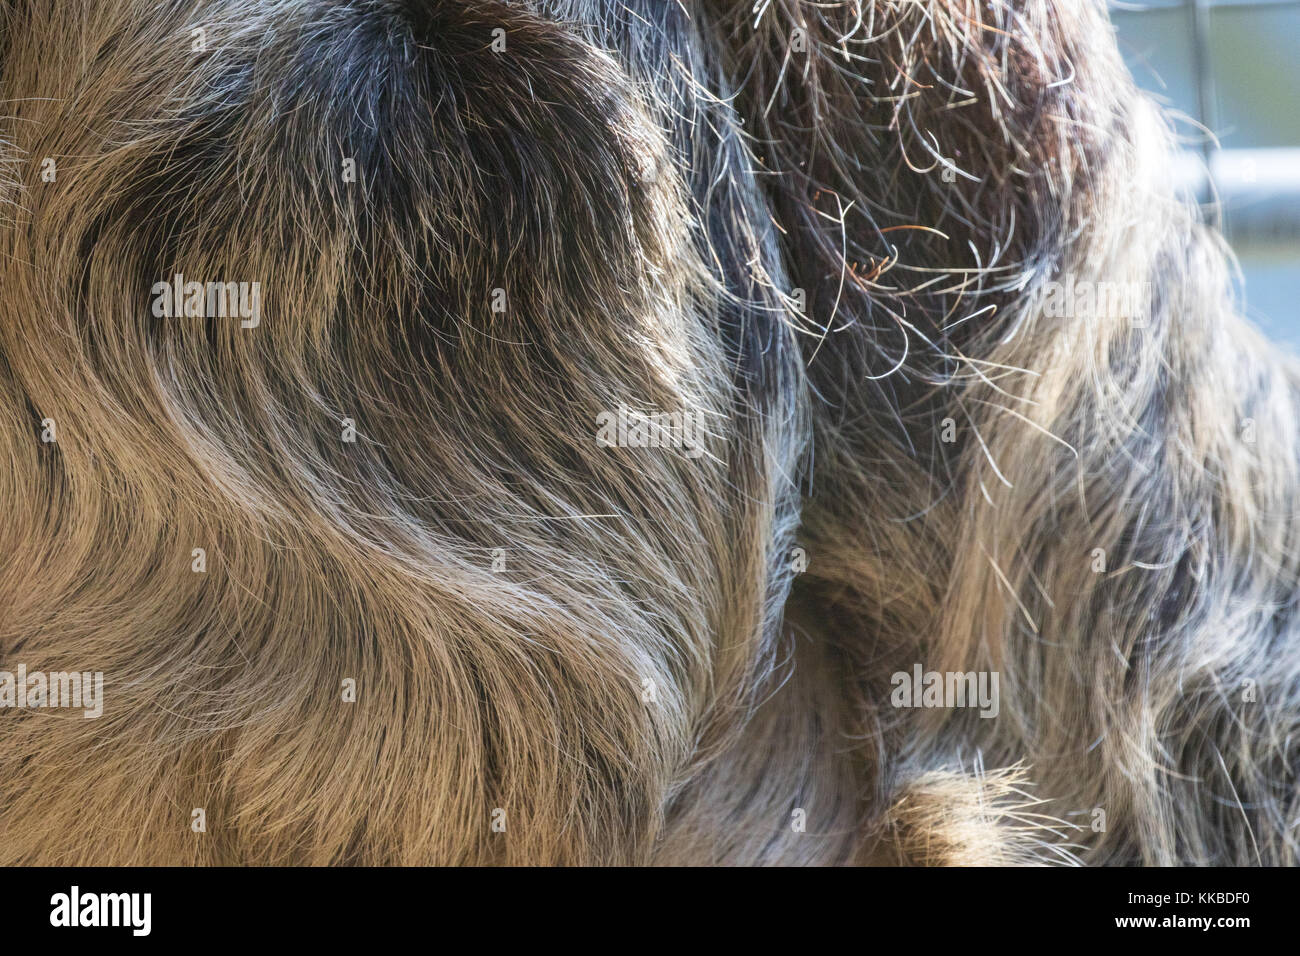 Deux doigts de Linné sloth - choloepus didactylus - fourrure libre. Également connu sous le spécimen en captivité. unau. centre de réadaptation, incapable de relâcher. Banque D'Images